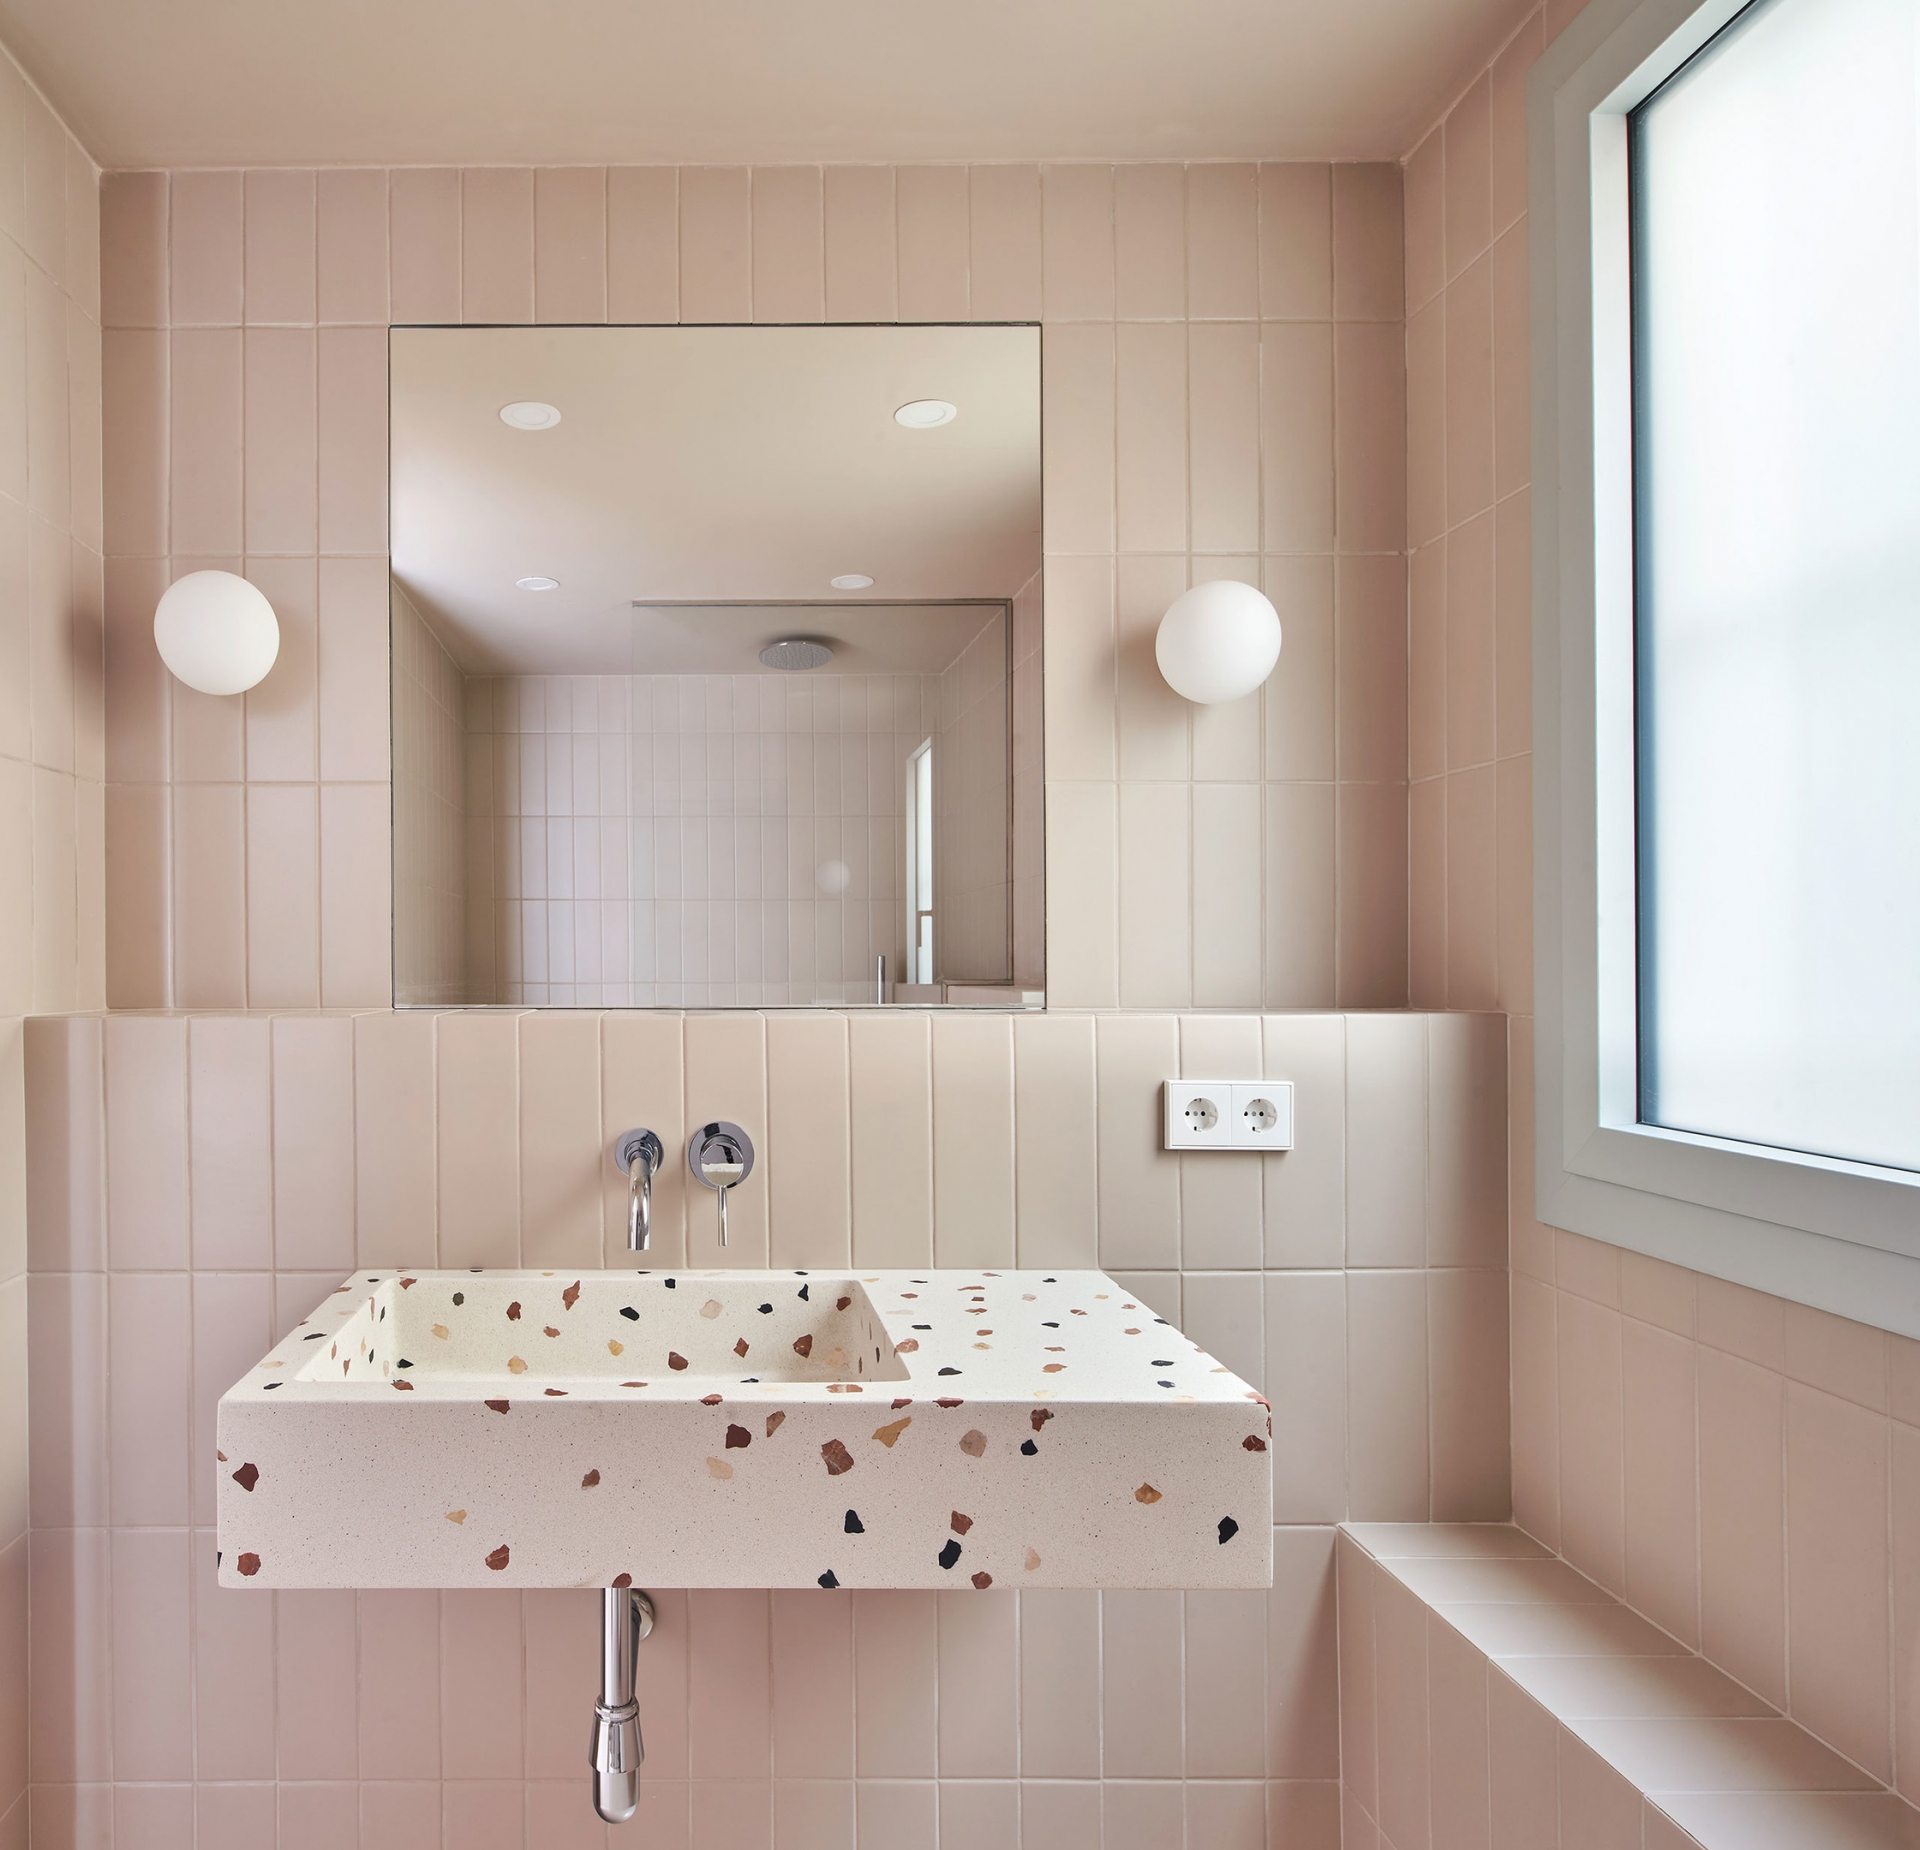 4 màu gạch tuyệt vời giúp phòng tắm nhỏ trở nên đẹp và rộng hơn - Ảnh 7